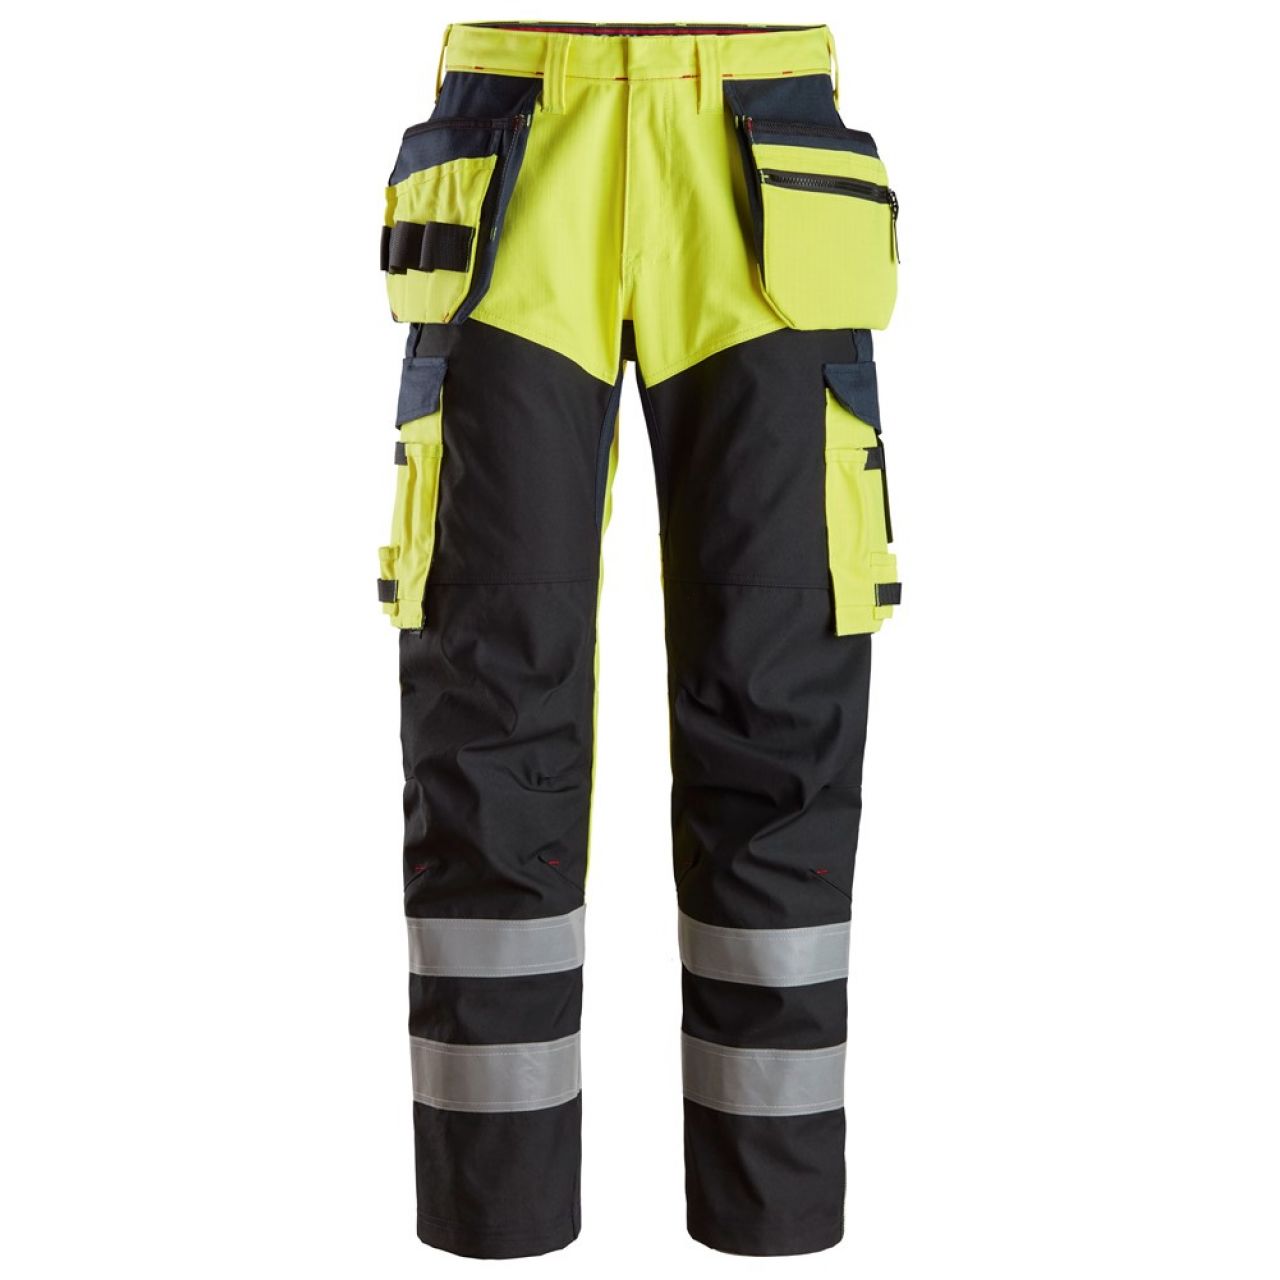 6265 Pantalones largos de trabajo de alta visibilidad clase 1 con bolsillos flotantes y espinilla reforzada ProtecWork amarillo-azul marino talla 158